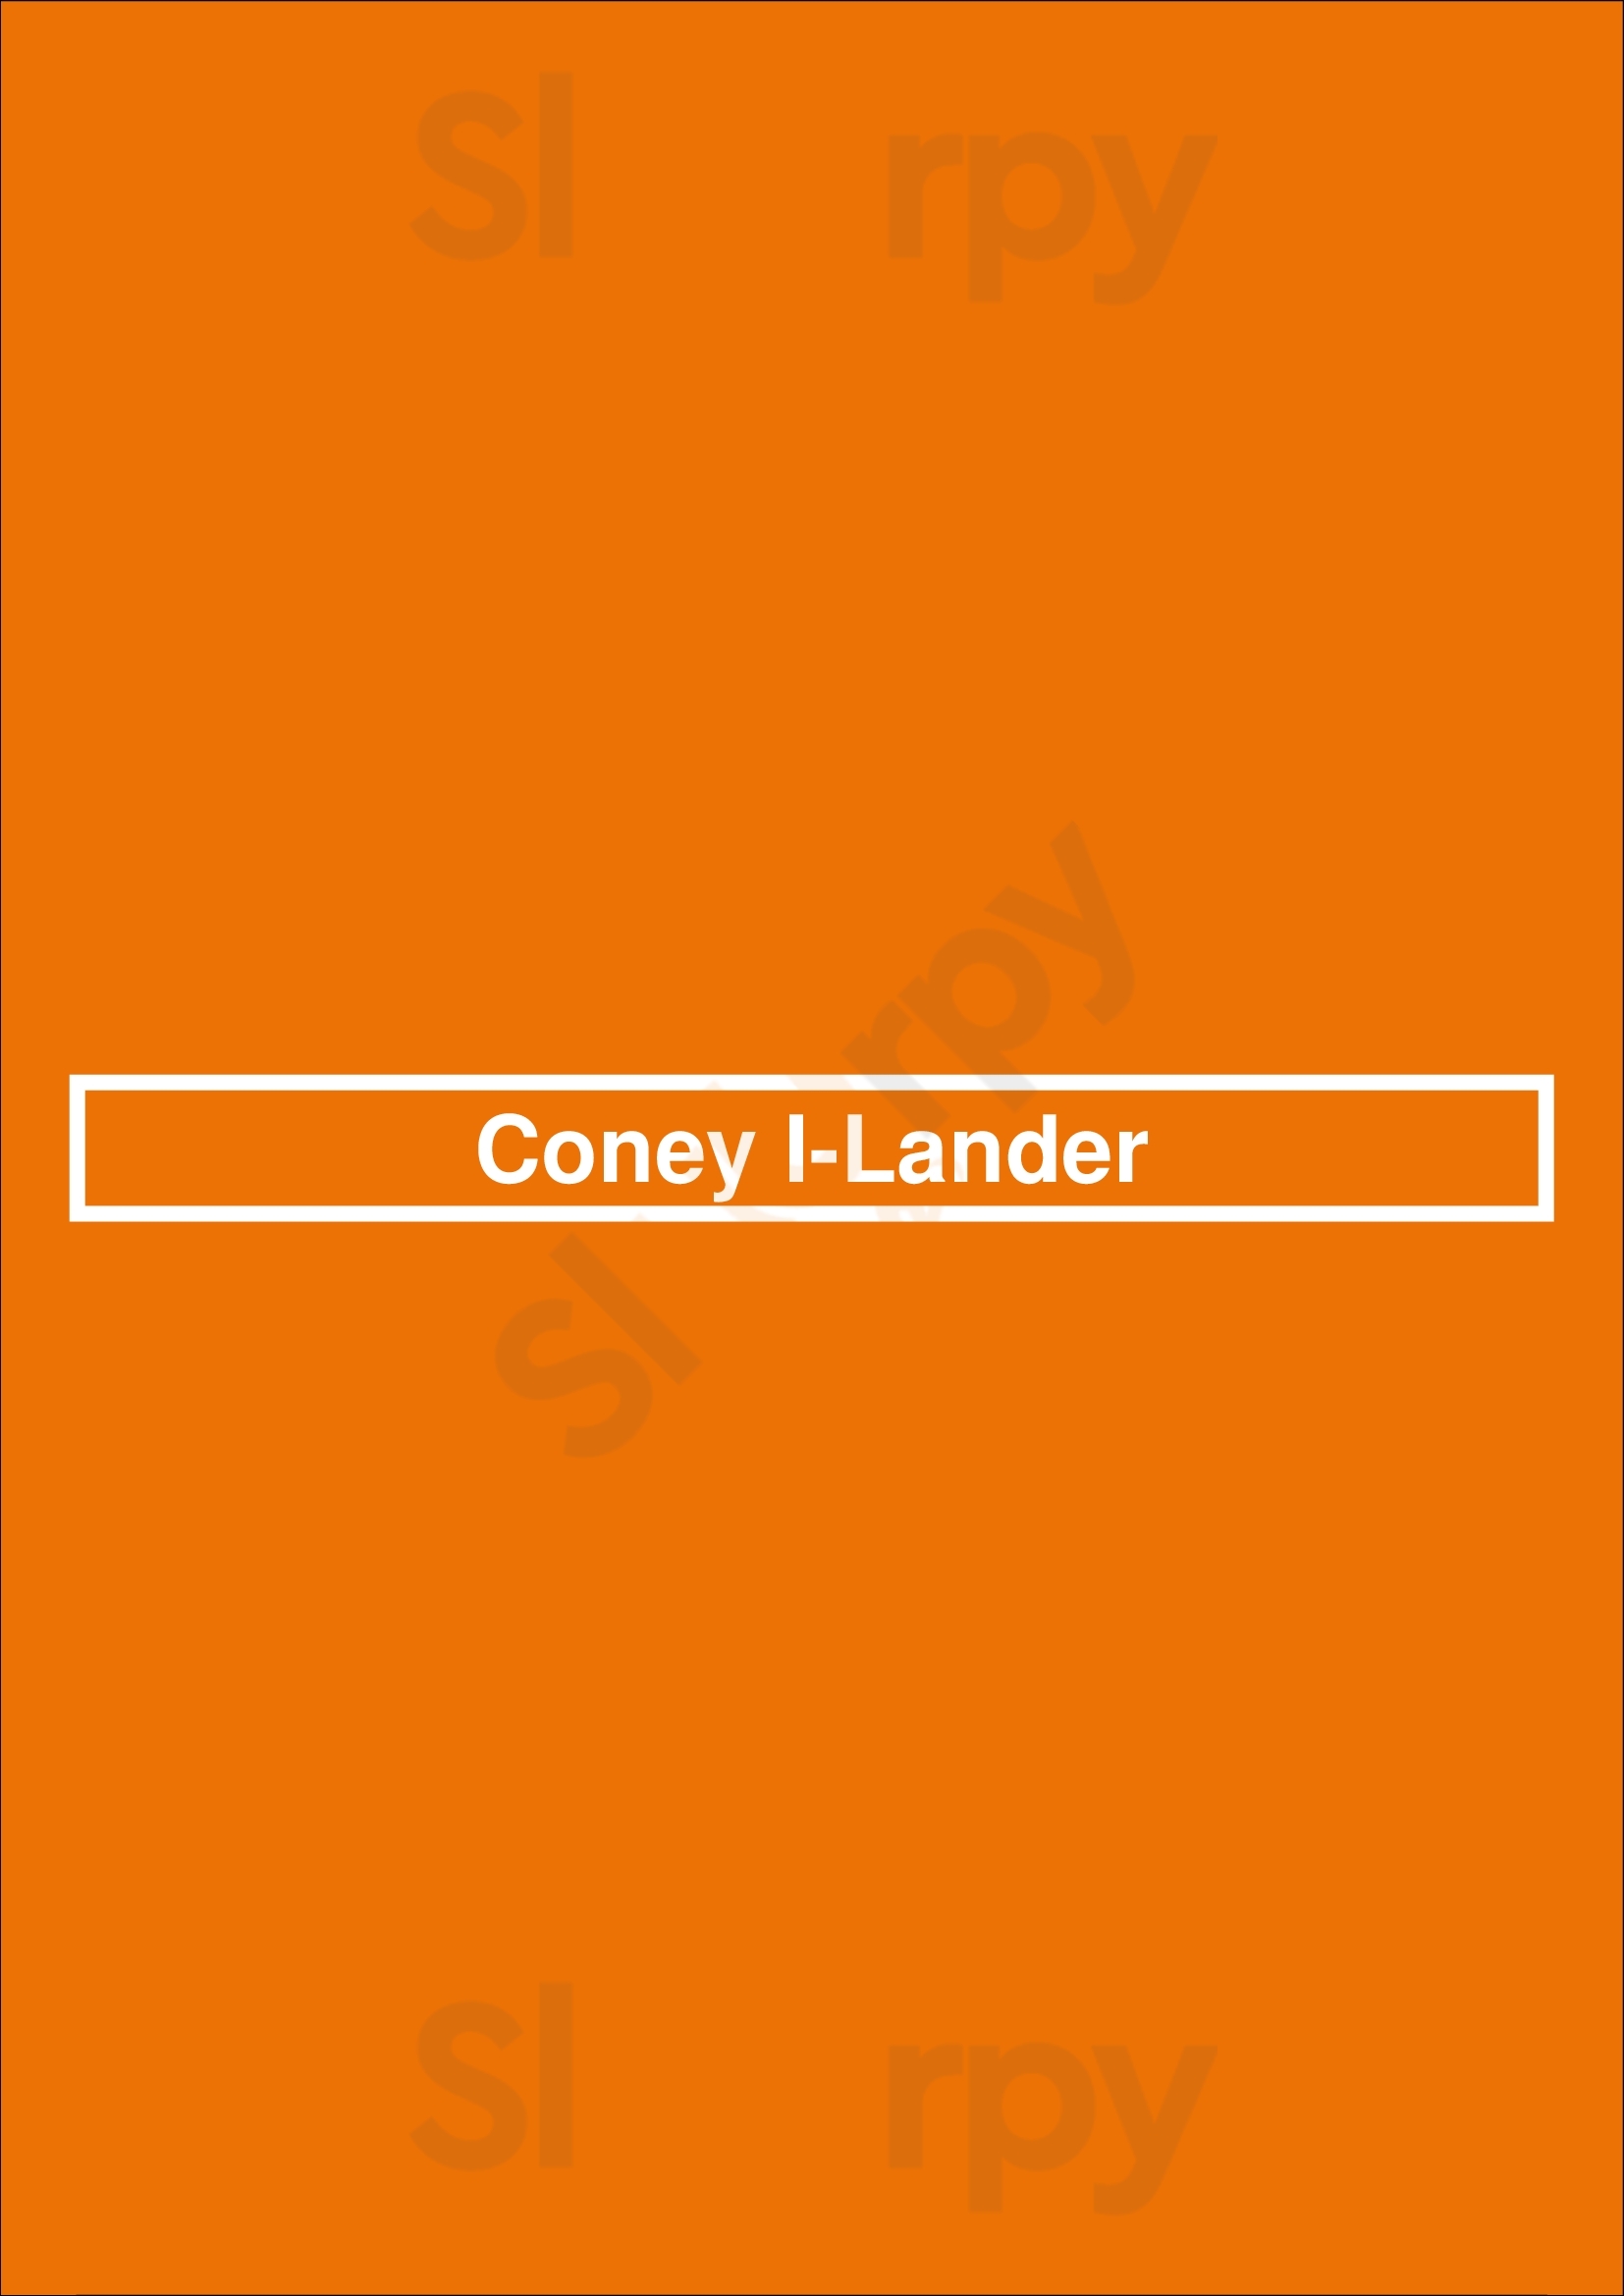 Coney I-lander Tulsa Menu - 1